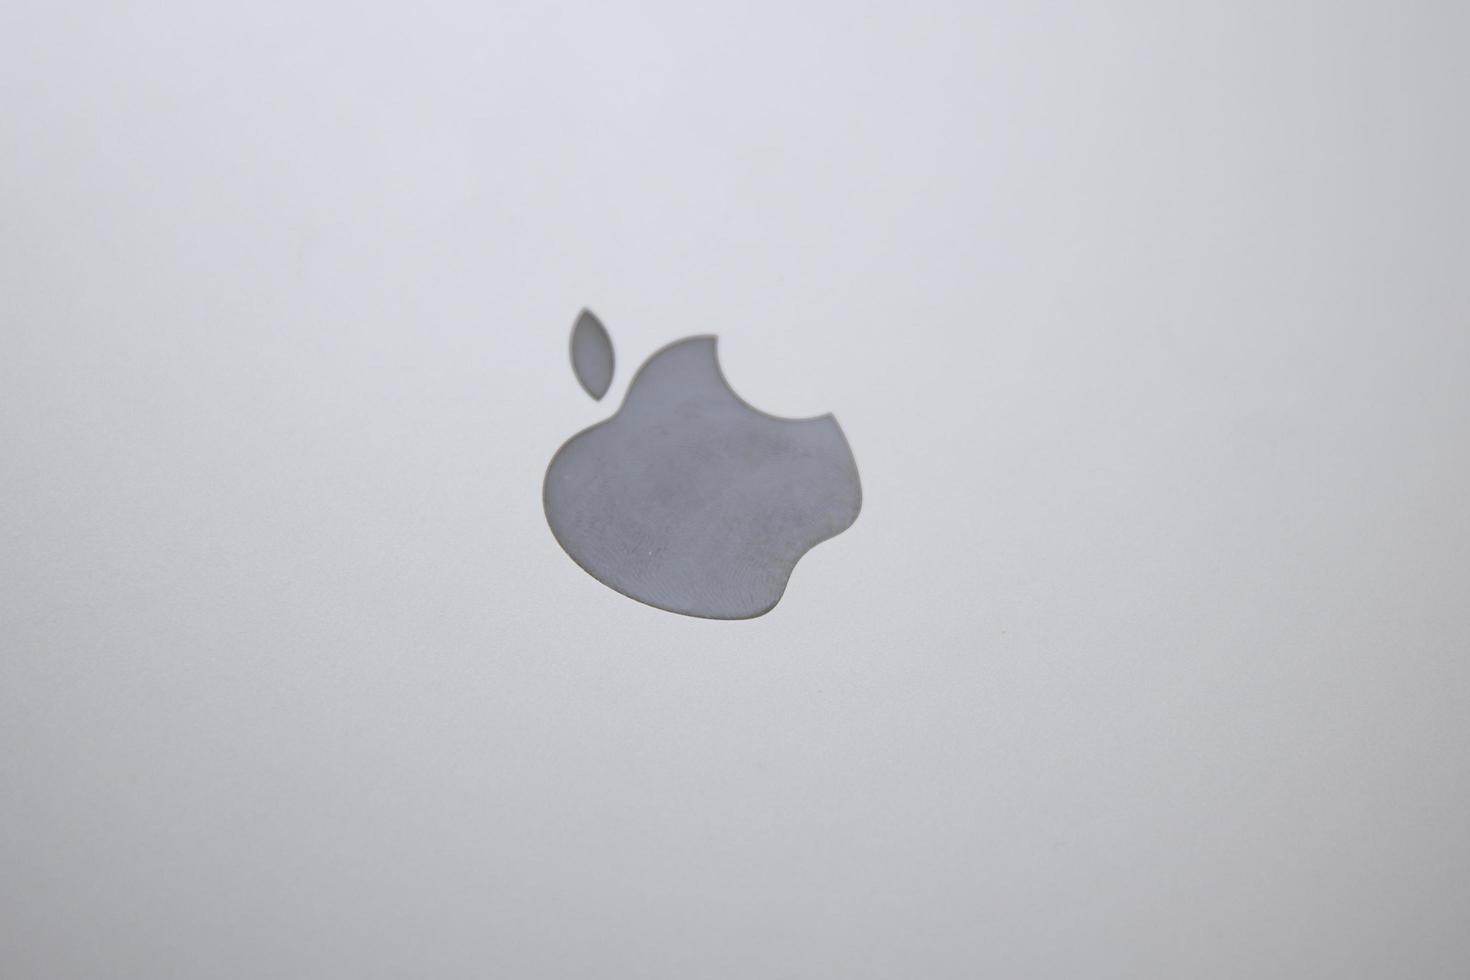 belgrado, sérvia, 2020 - detalhes do computador macbook. o macbook é uma marca de notebooks fabricados pela apple inc. foto